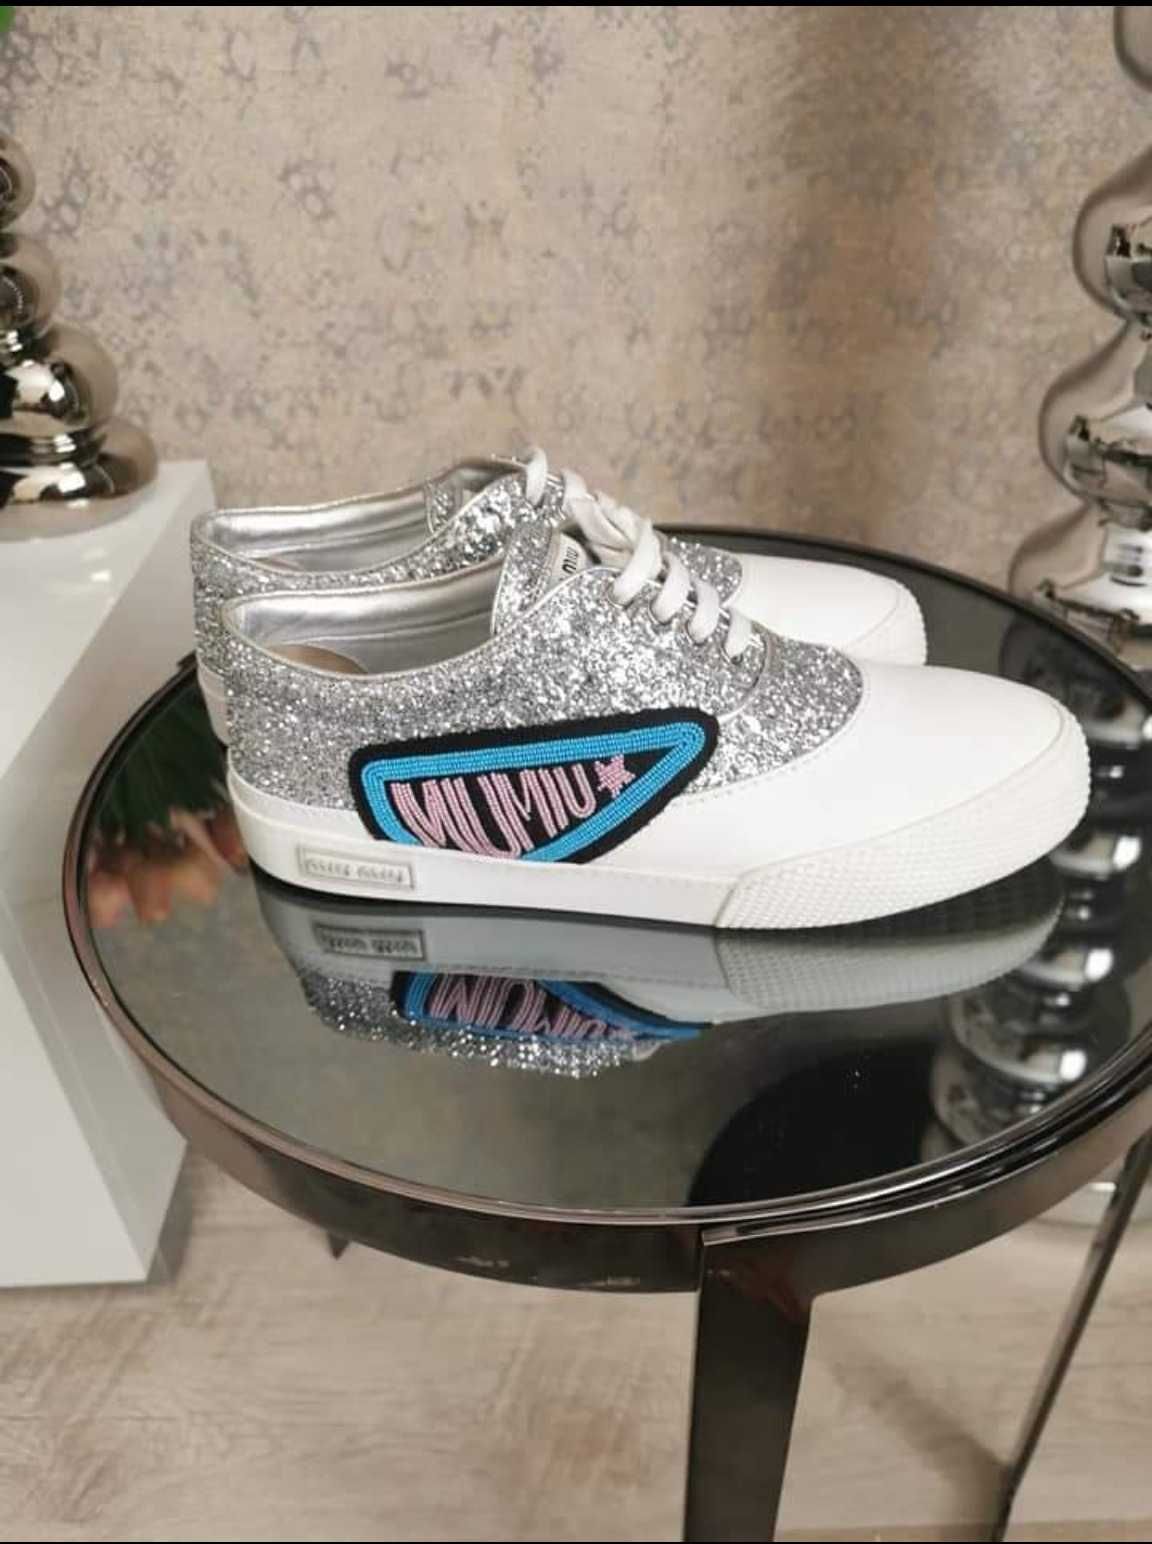 Sneakers Miu Miu/Prada 40 glitter si piele alb